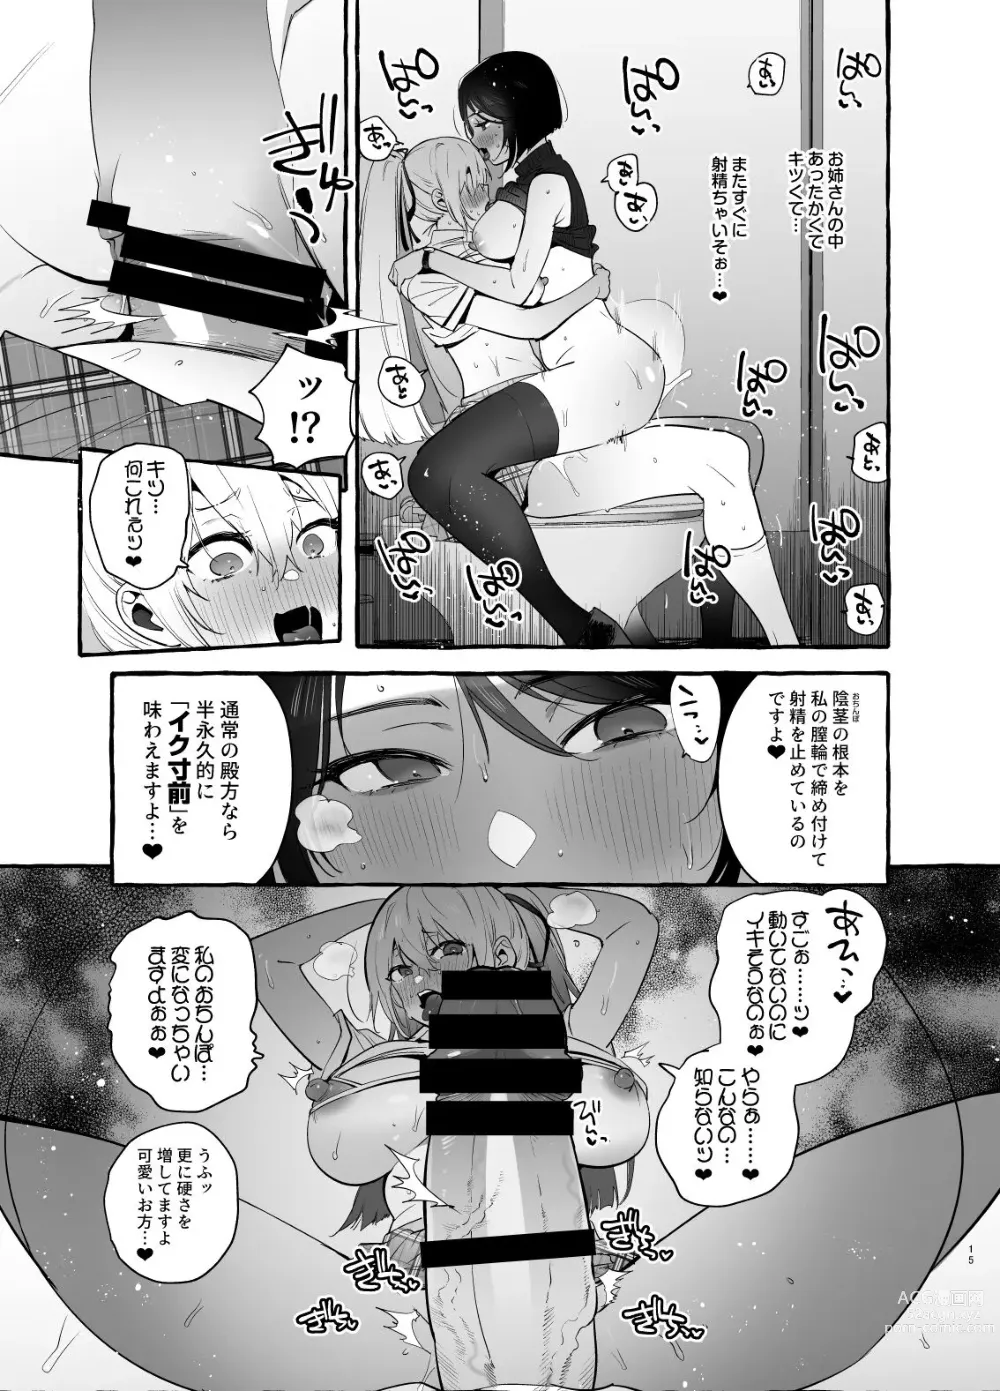 Page 16 of doujinshi Ochinpo Ippan Joseito